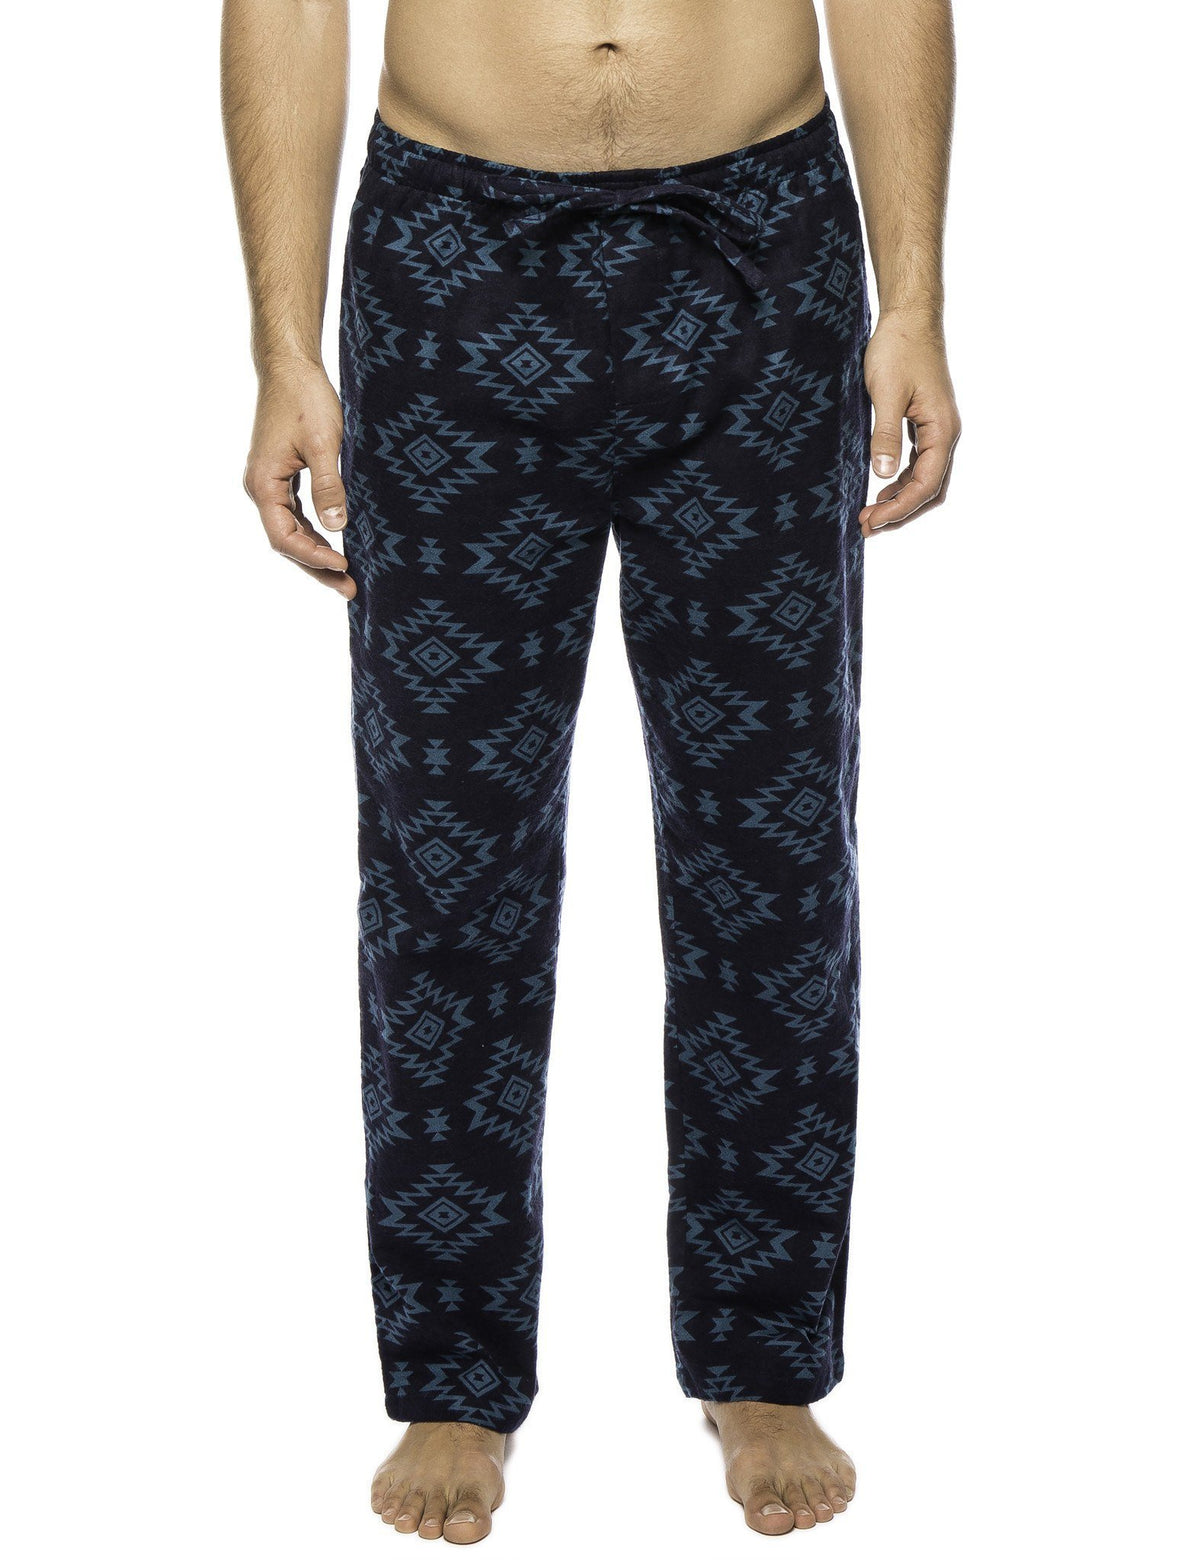 Men's 100% Cotton Flannel Lounge Pants - Aztec Navy/Teal